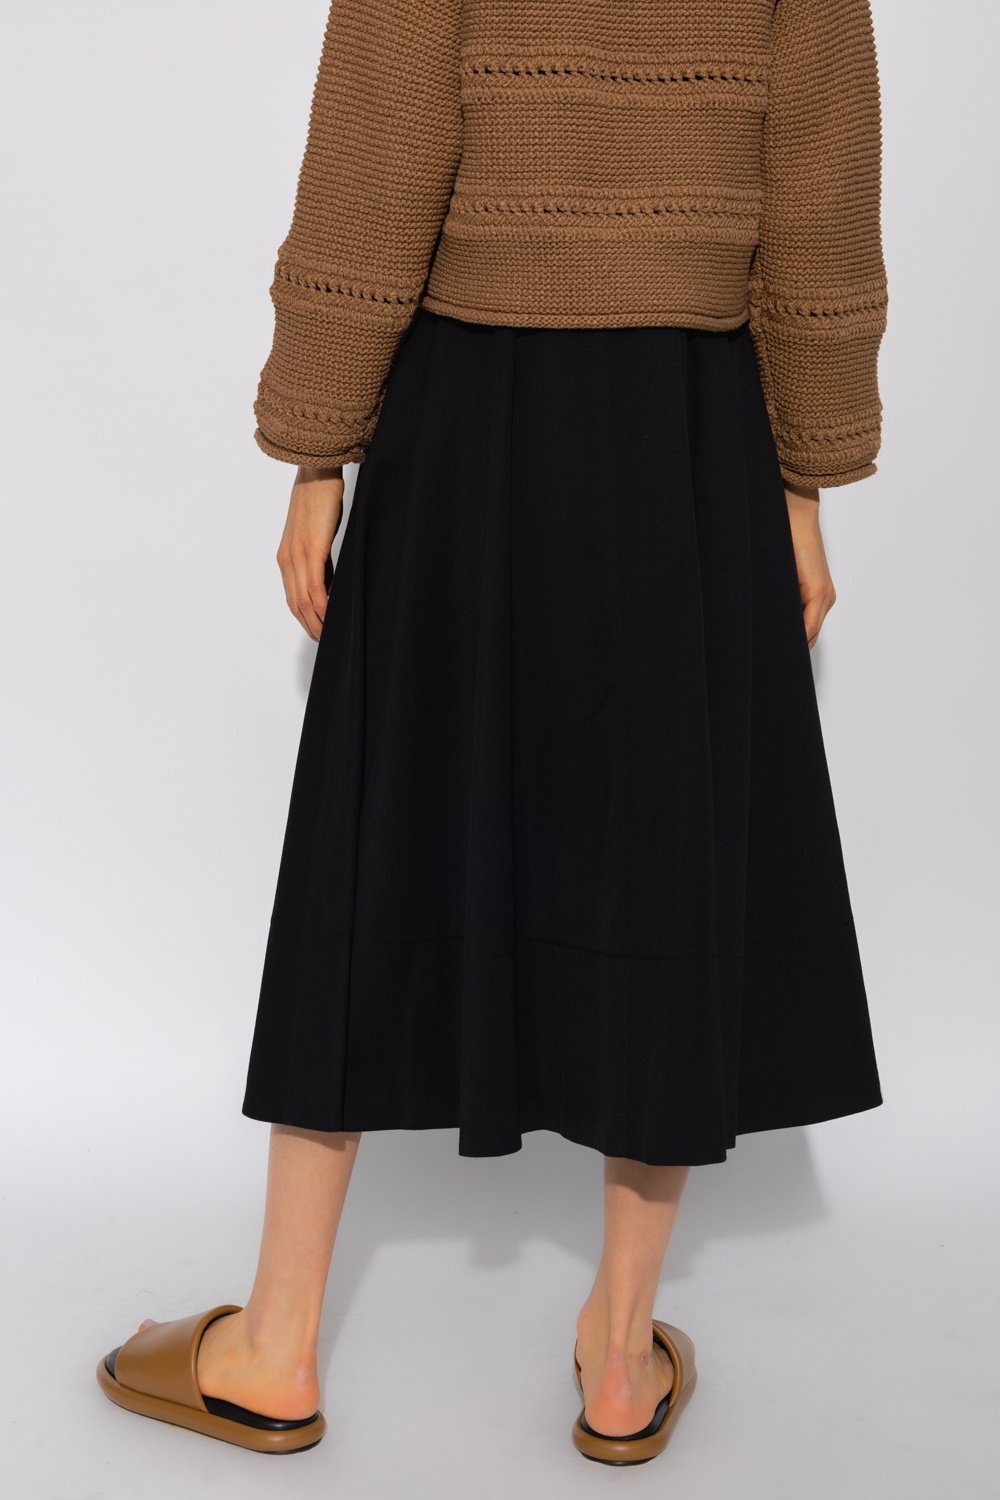 proenza shorts Schouler Wool skirt